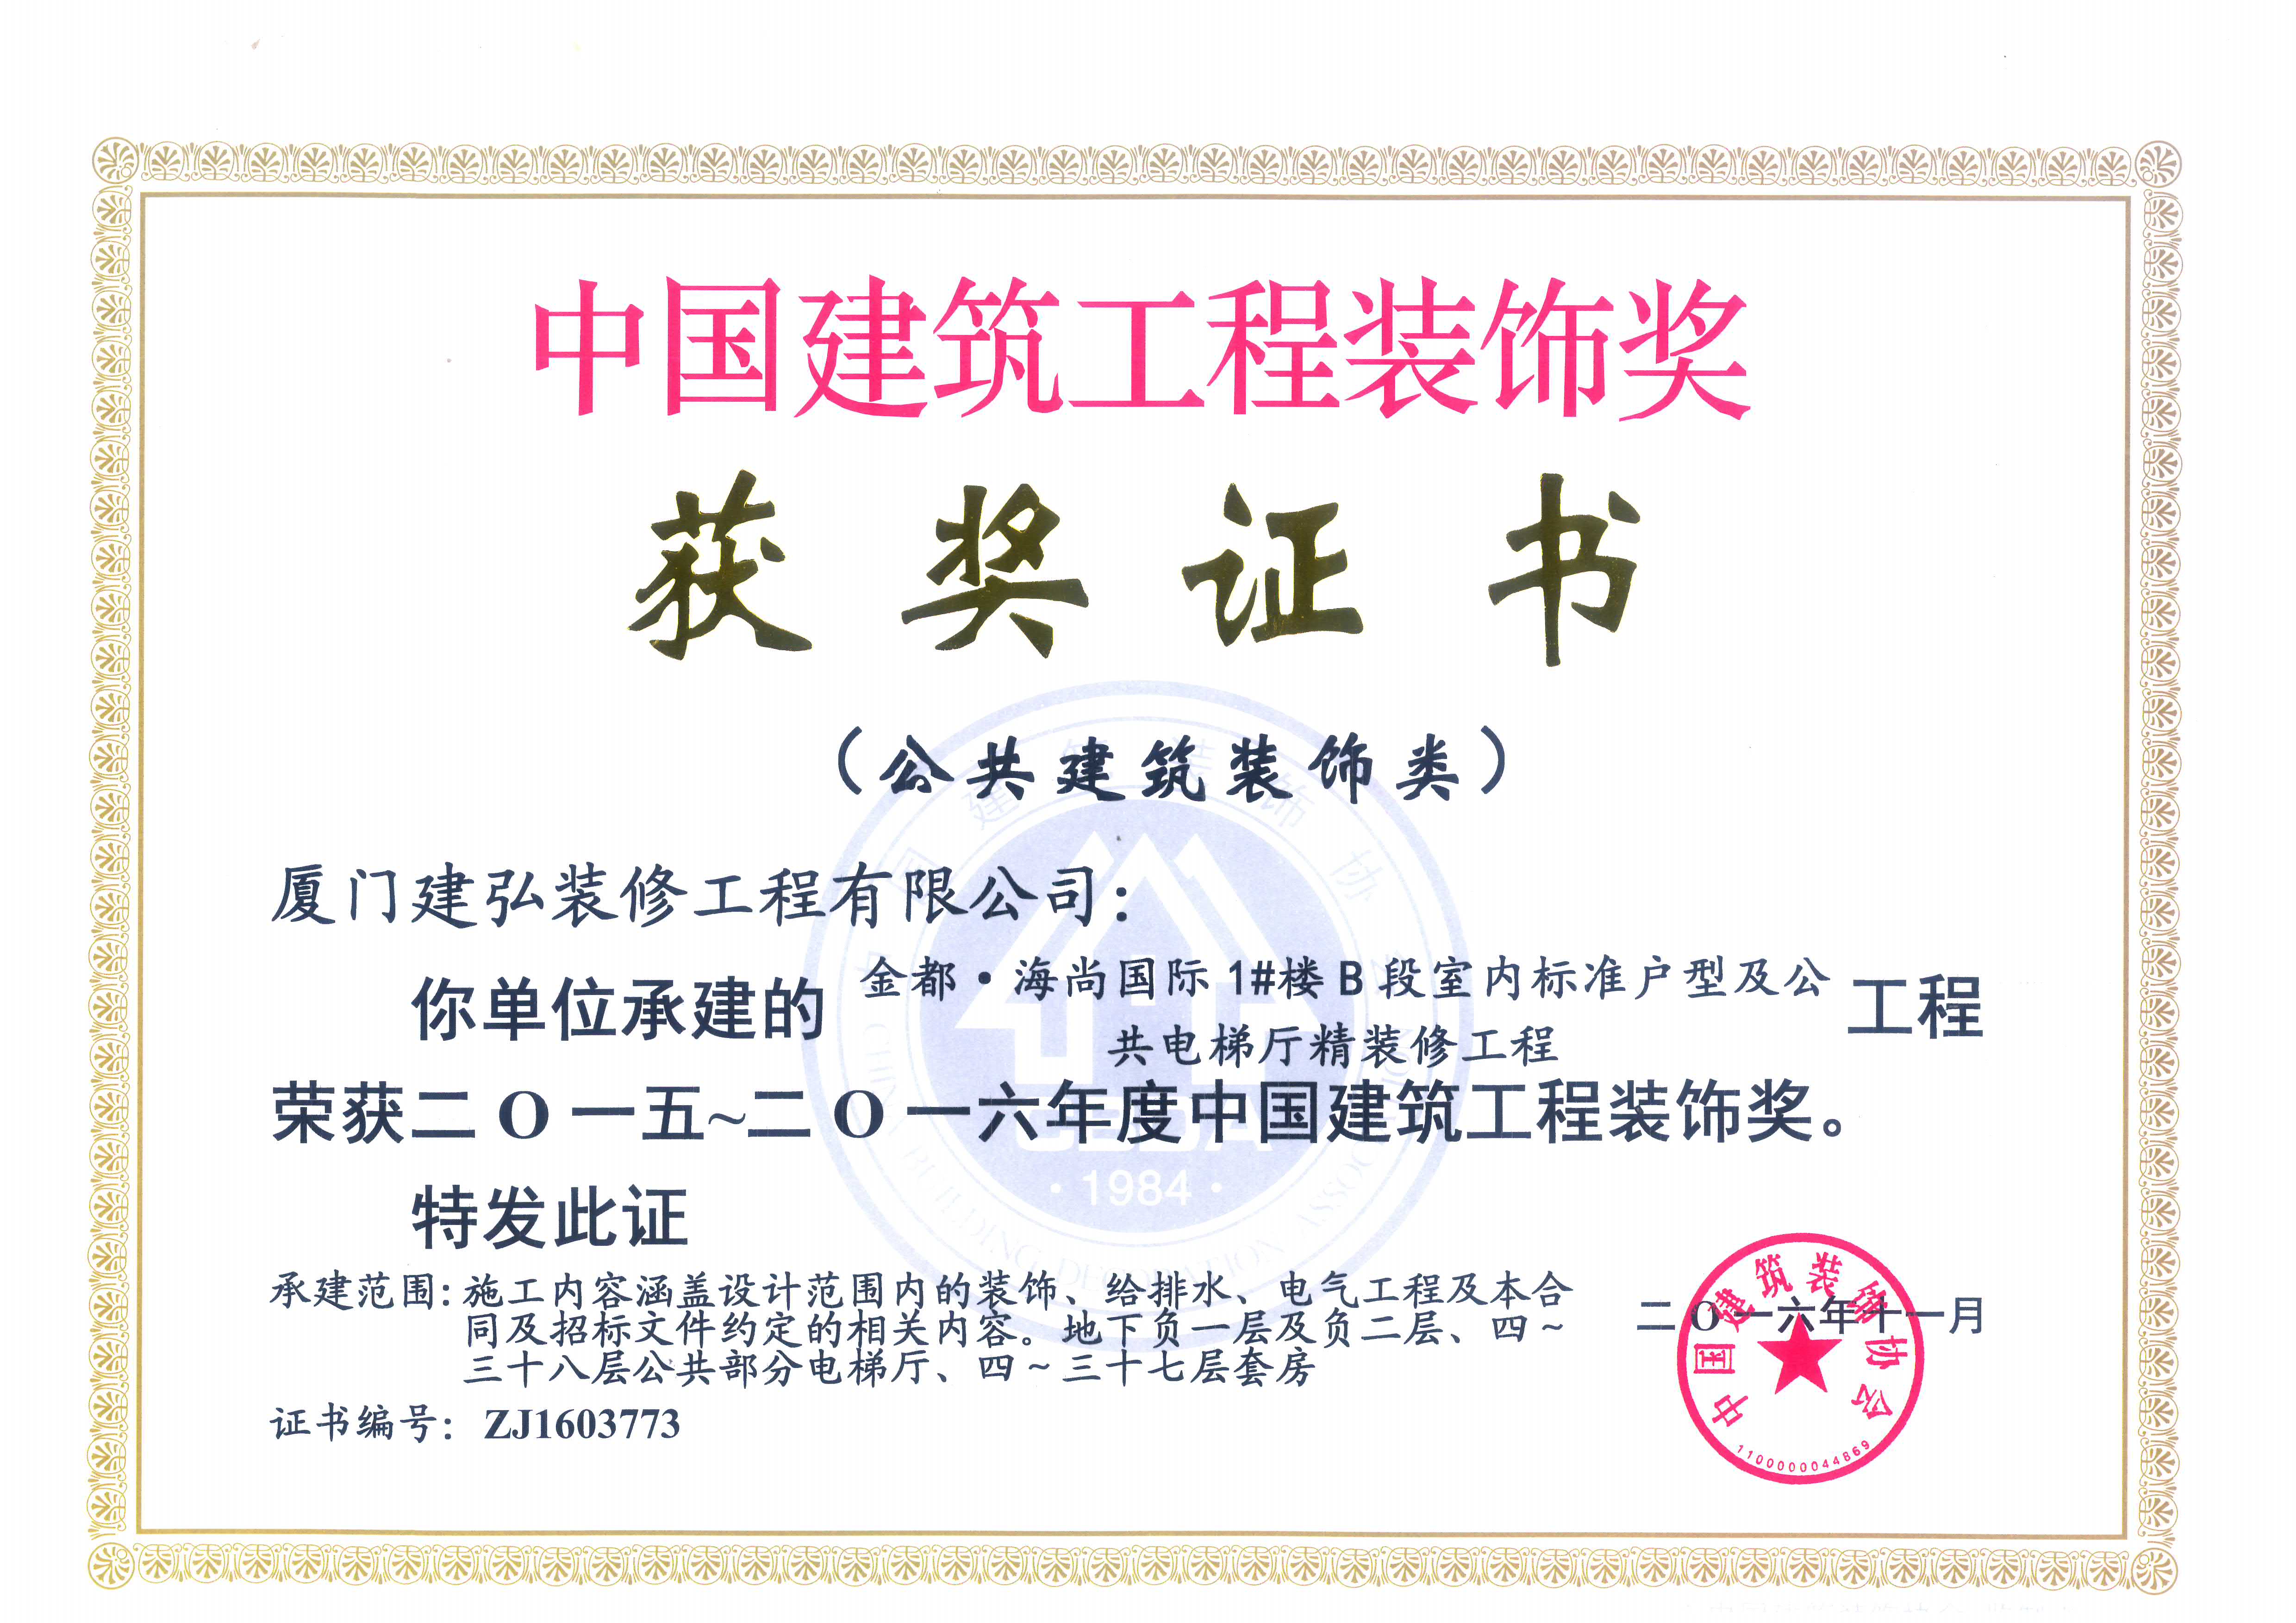 我司荣获"中国建筑装饰工程奖"